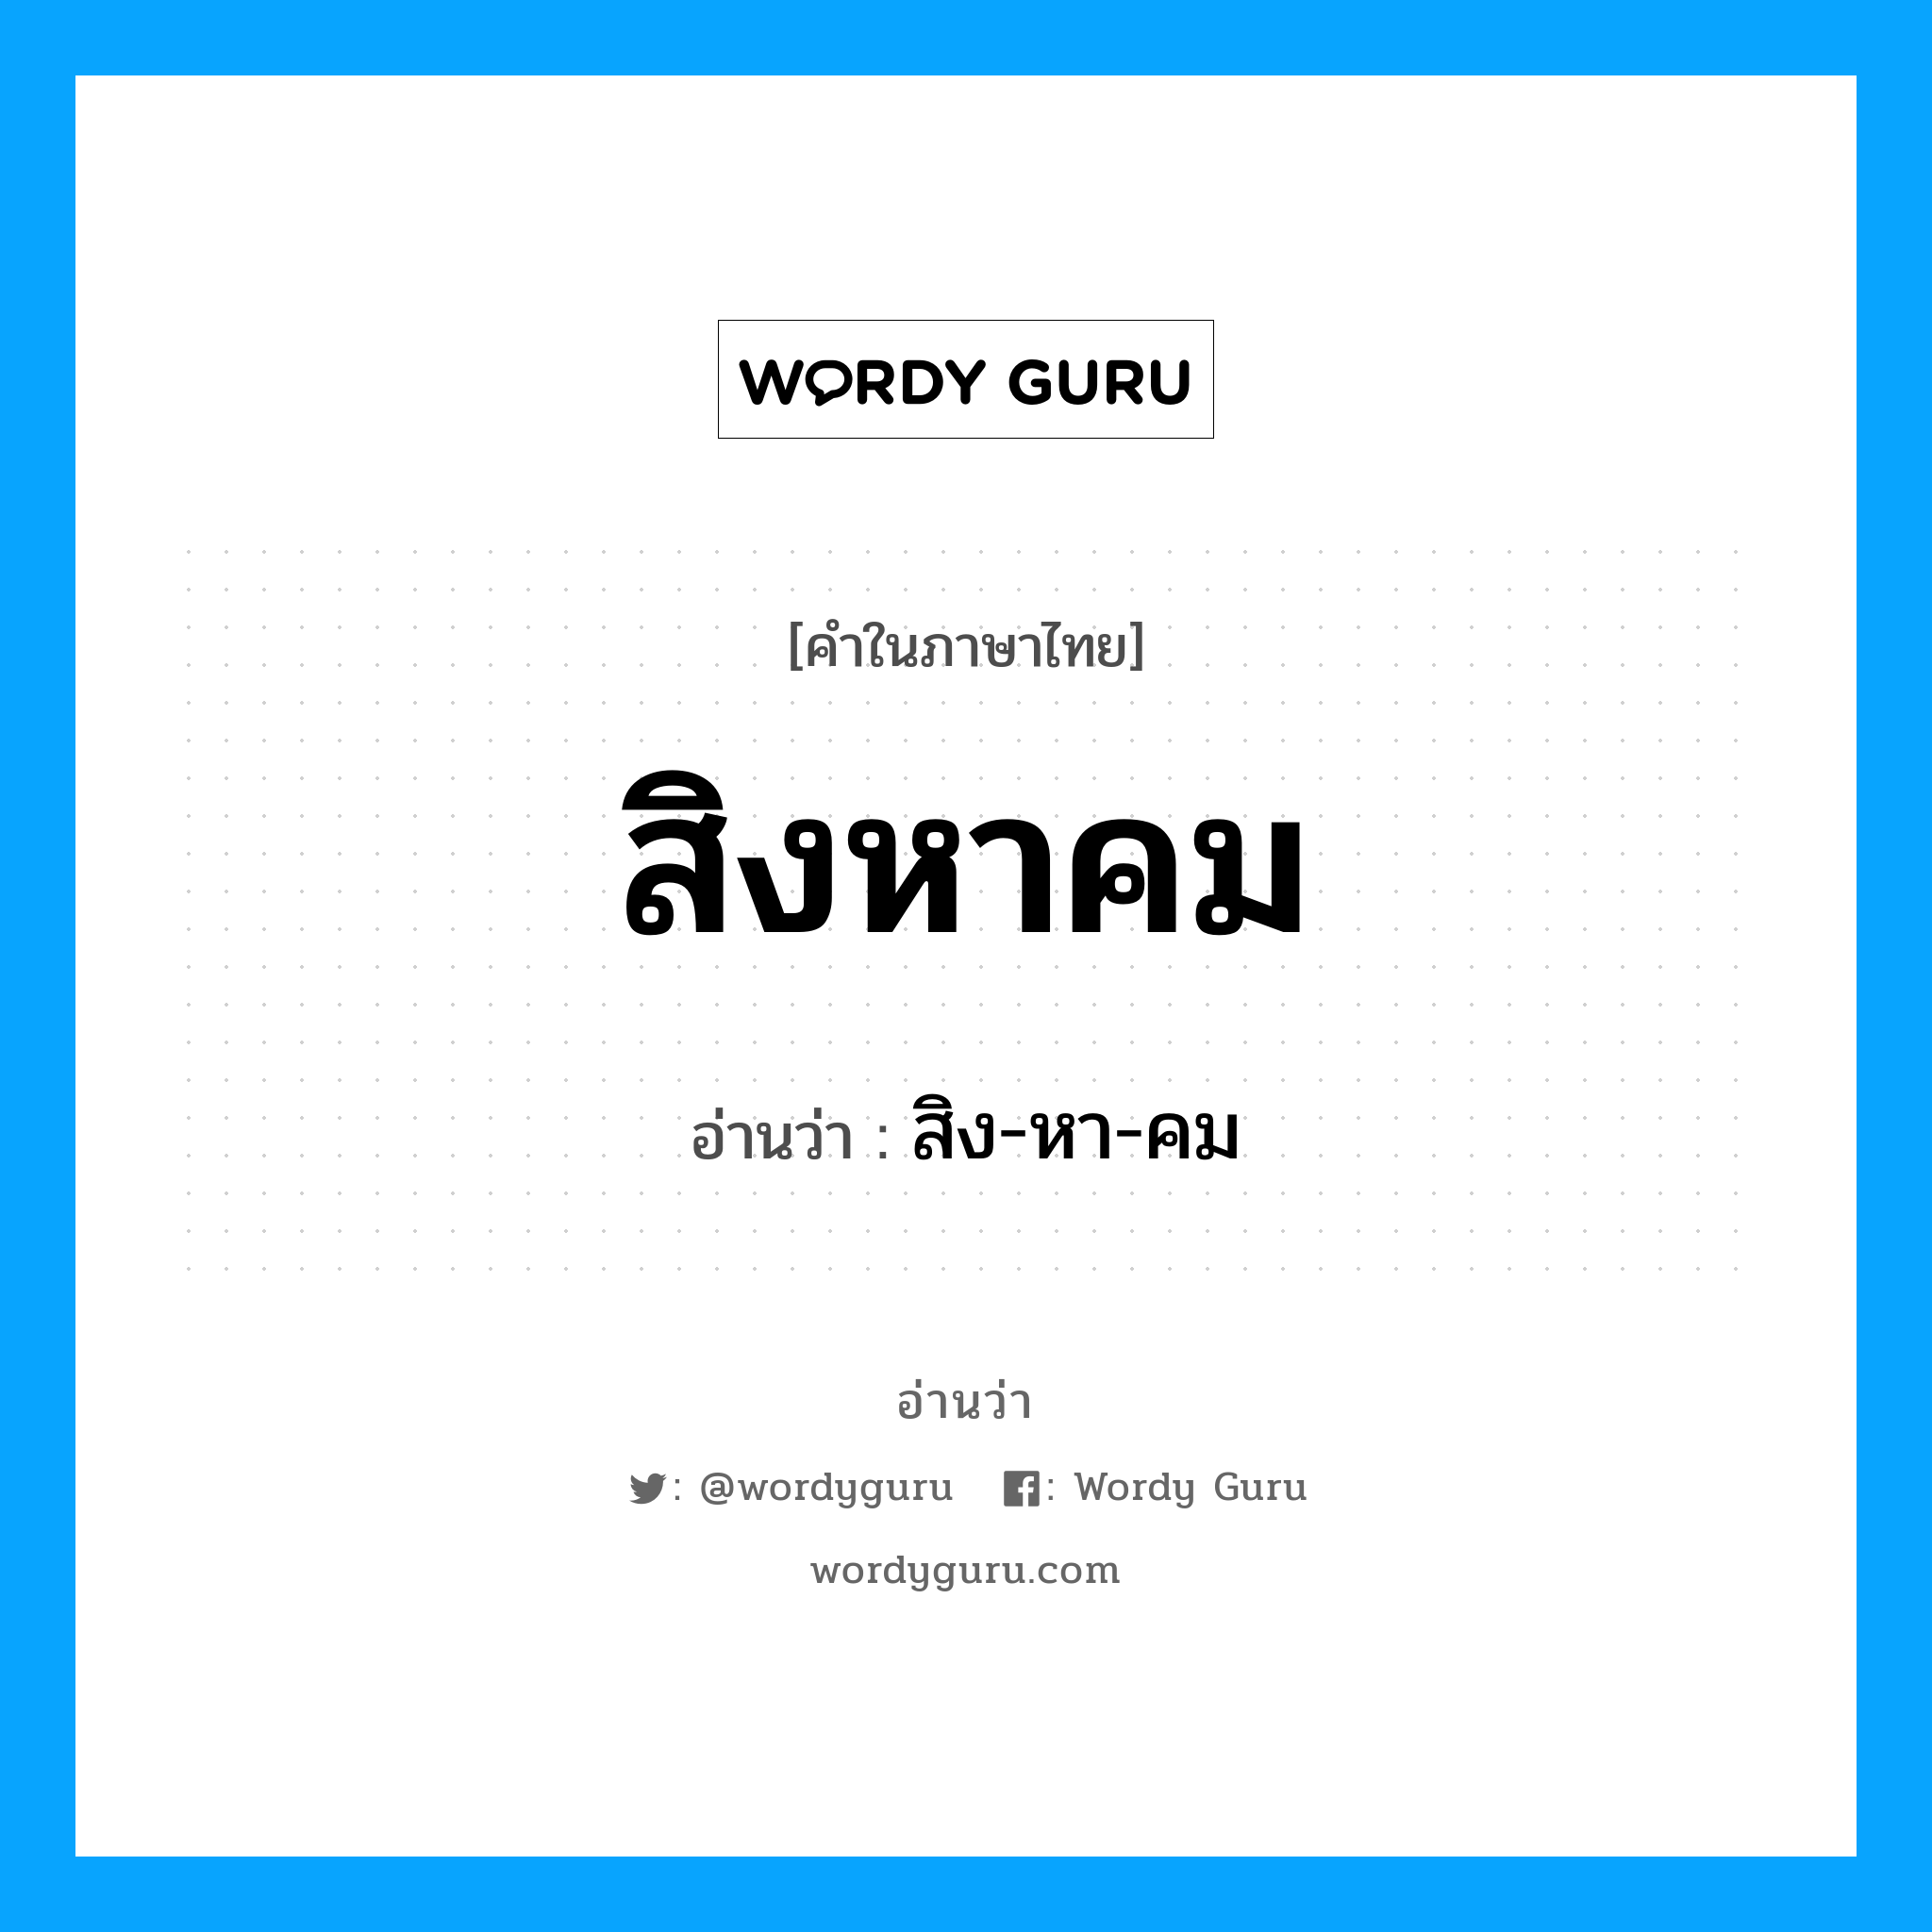 สิง-หา-คม เป็นคำอ่านของคำไหน?, คำในภาษาไทย สิง-หา-คม อ่านว่า สิงหาคม หมวด เดือน หมวด เดือน